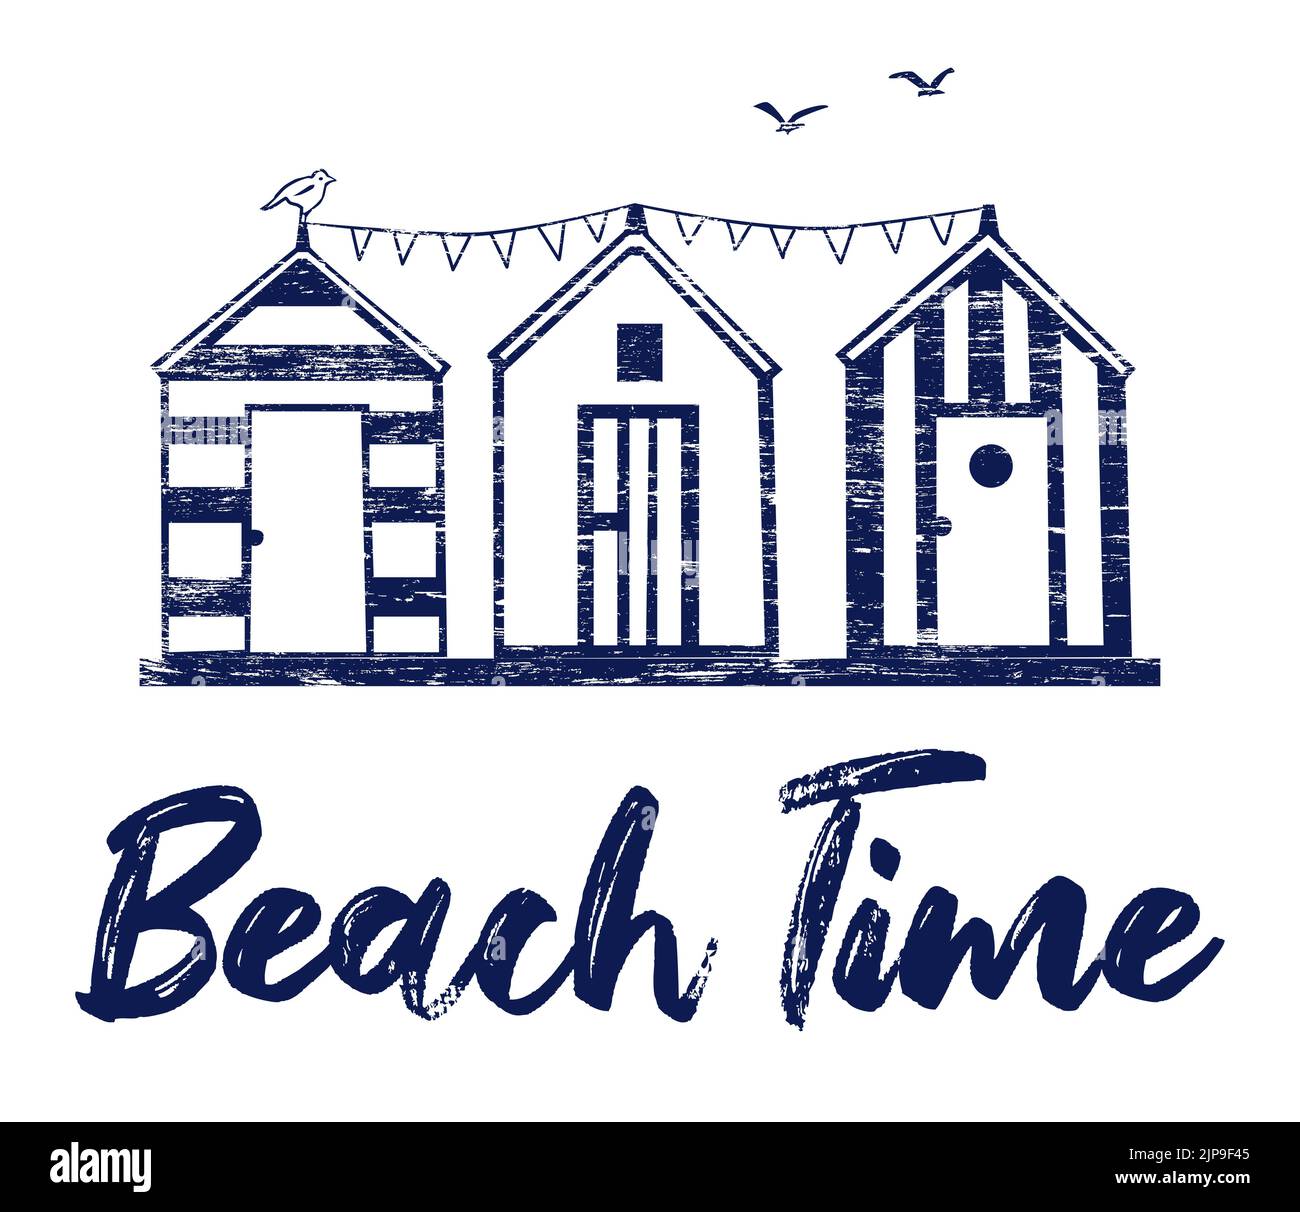 Ilustración gráfica de tres cabañas de playa con el título 'Tiempo de playa' sobre fondo blanco Foto de stock